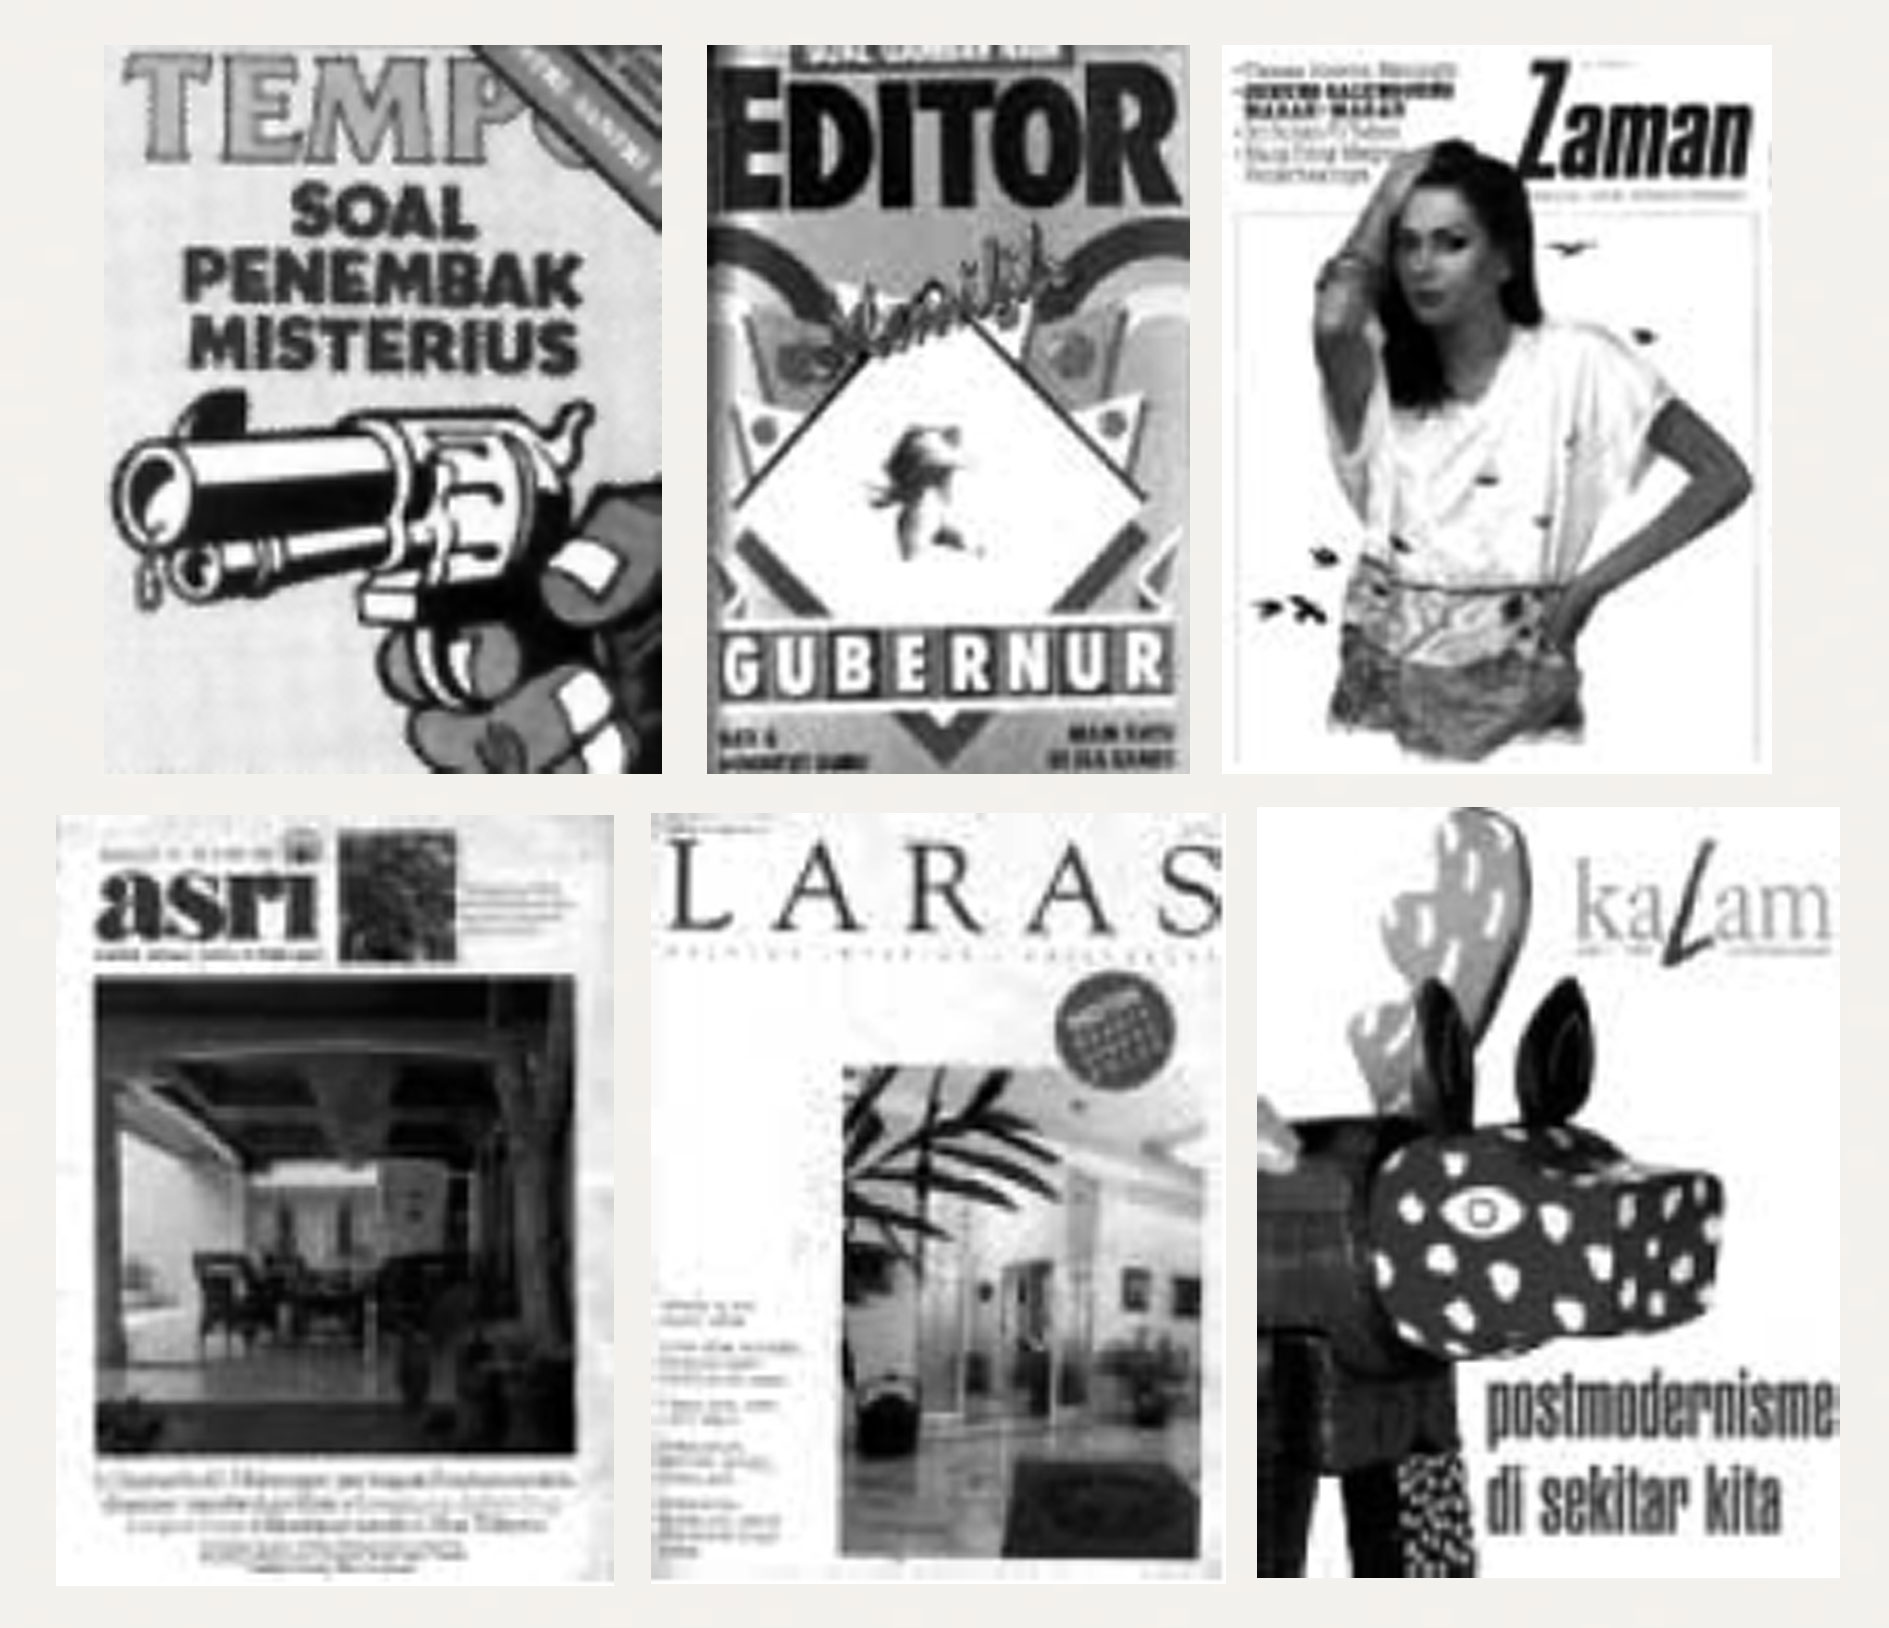 Gambar 9. (a) Kulit muka majalah "Tempo" tahun 1970-an; (b) Kulit muka majalah "Editor" tahun 1980-an; (c) Kulit muka majalah "Zaman" tahun 1980-an; (d) Kulit majalah "ASRI" tahun 1980-an; (e) Kulit majalah "LARAS" tahun 1980-an (f) Kulit muka majalah "Kalam" tahun 1990-an.